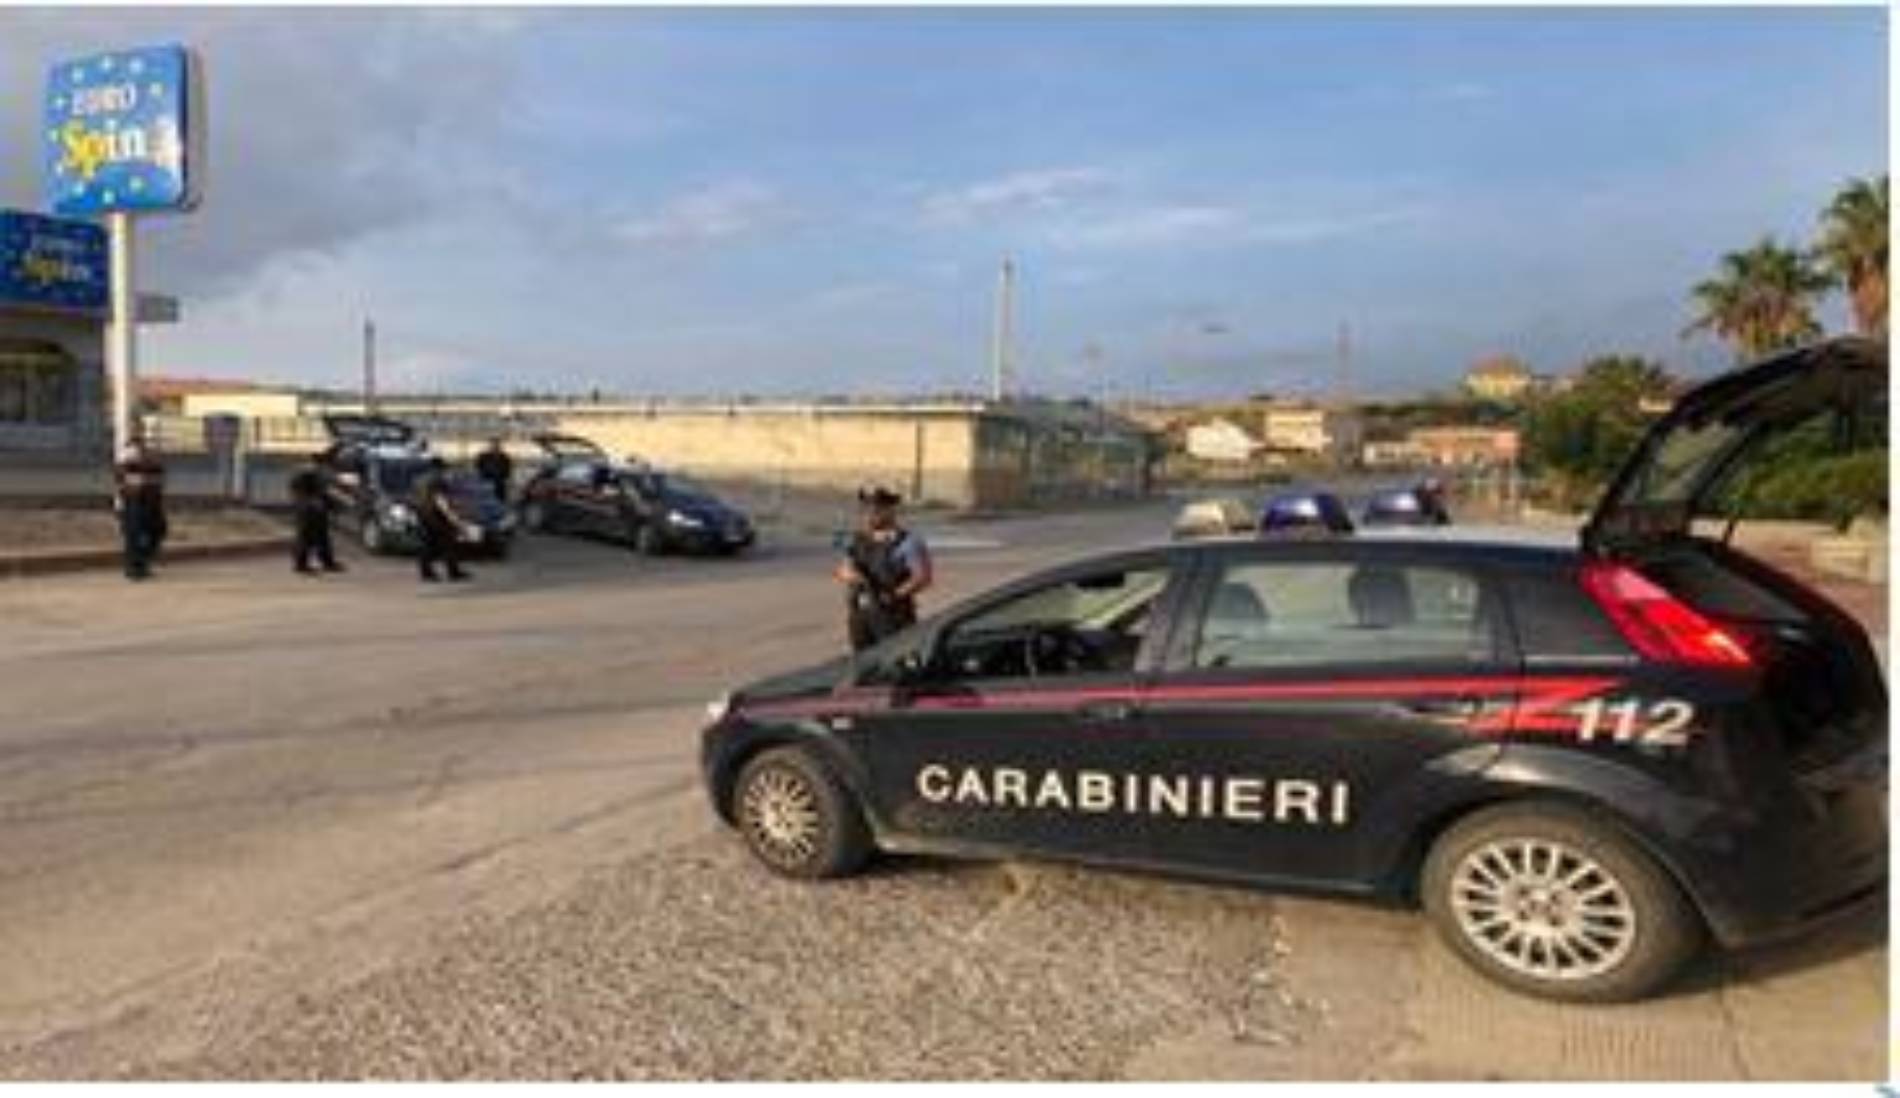 PIAZZA ARMERINA. Controlli dei carabinieri nel sud dell’ennese. Un giovane di Barrafranca segnalato alla prefettura di Enna per droga.